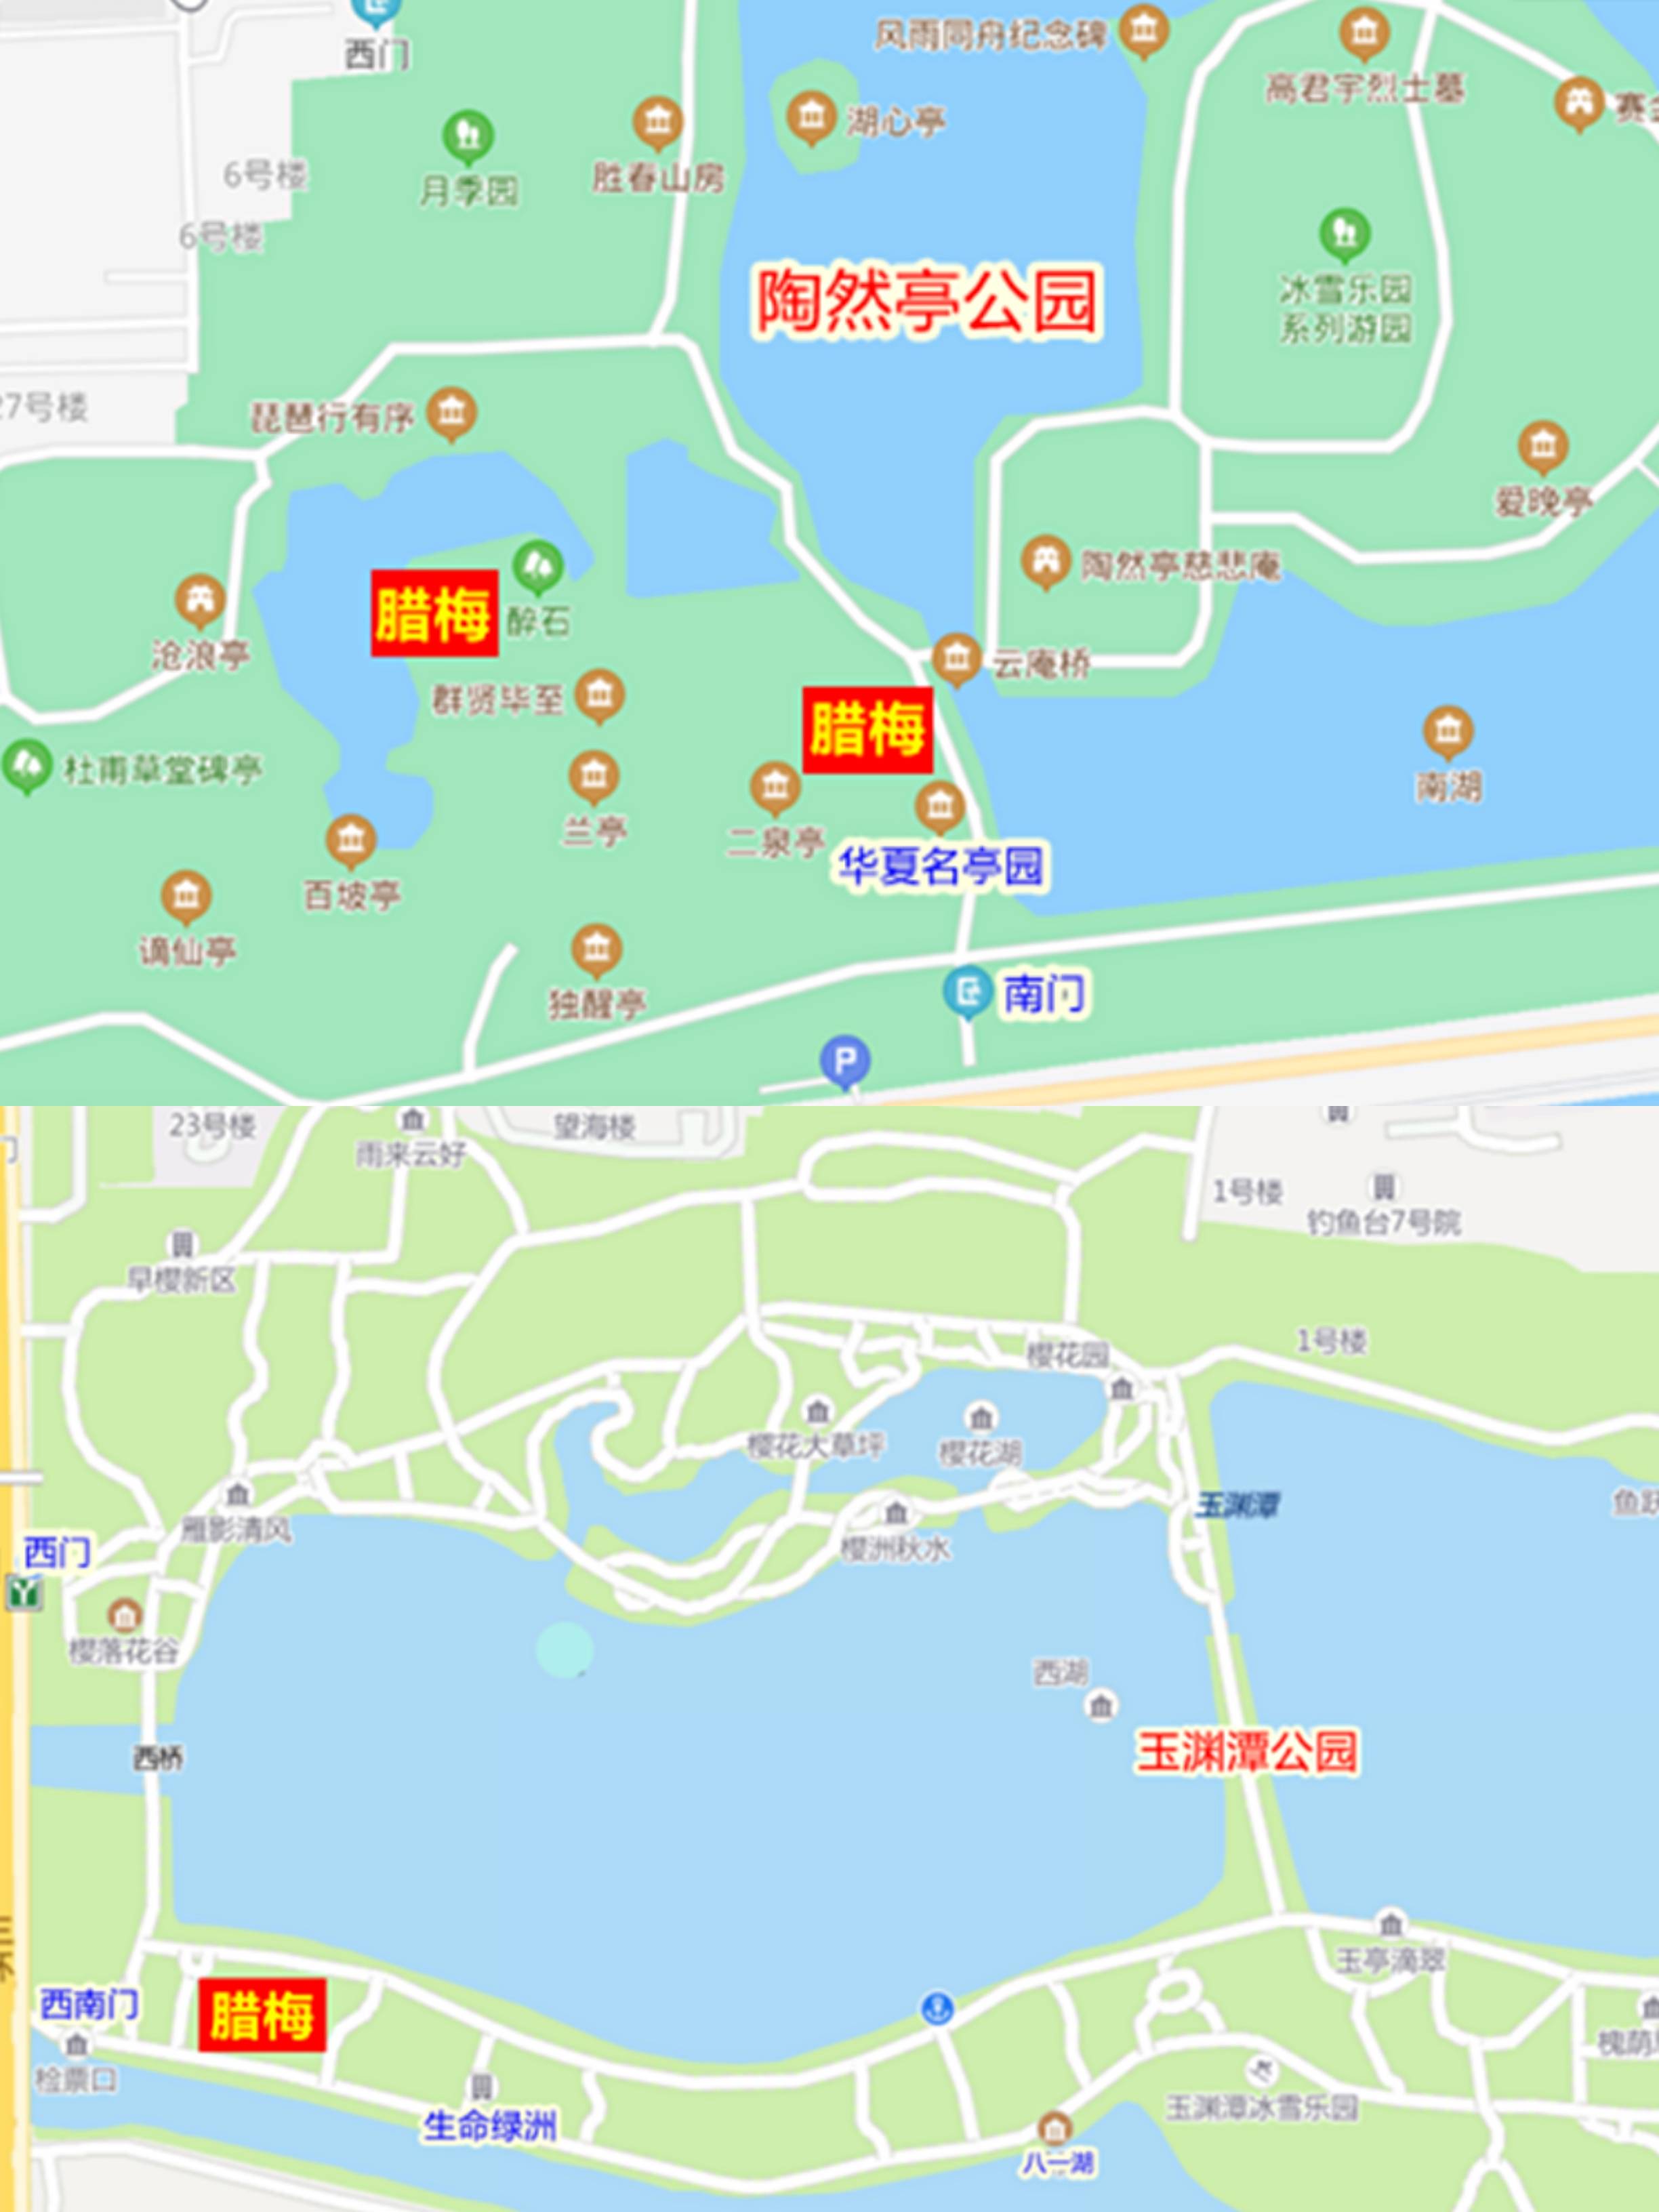 北京旅游春天赏花景点地图北京行李寄存攻略